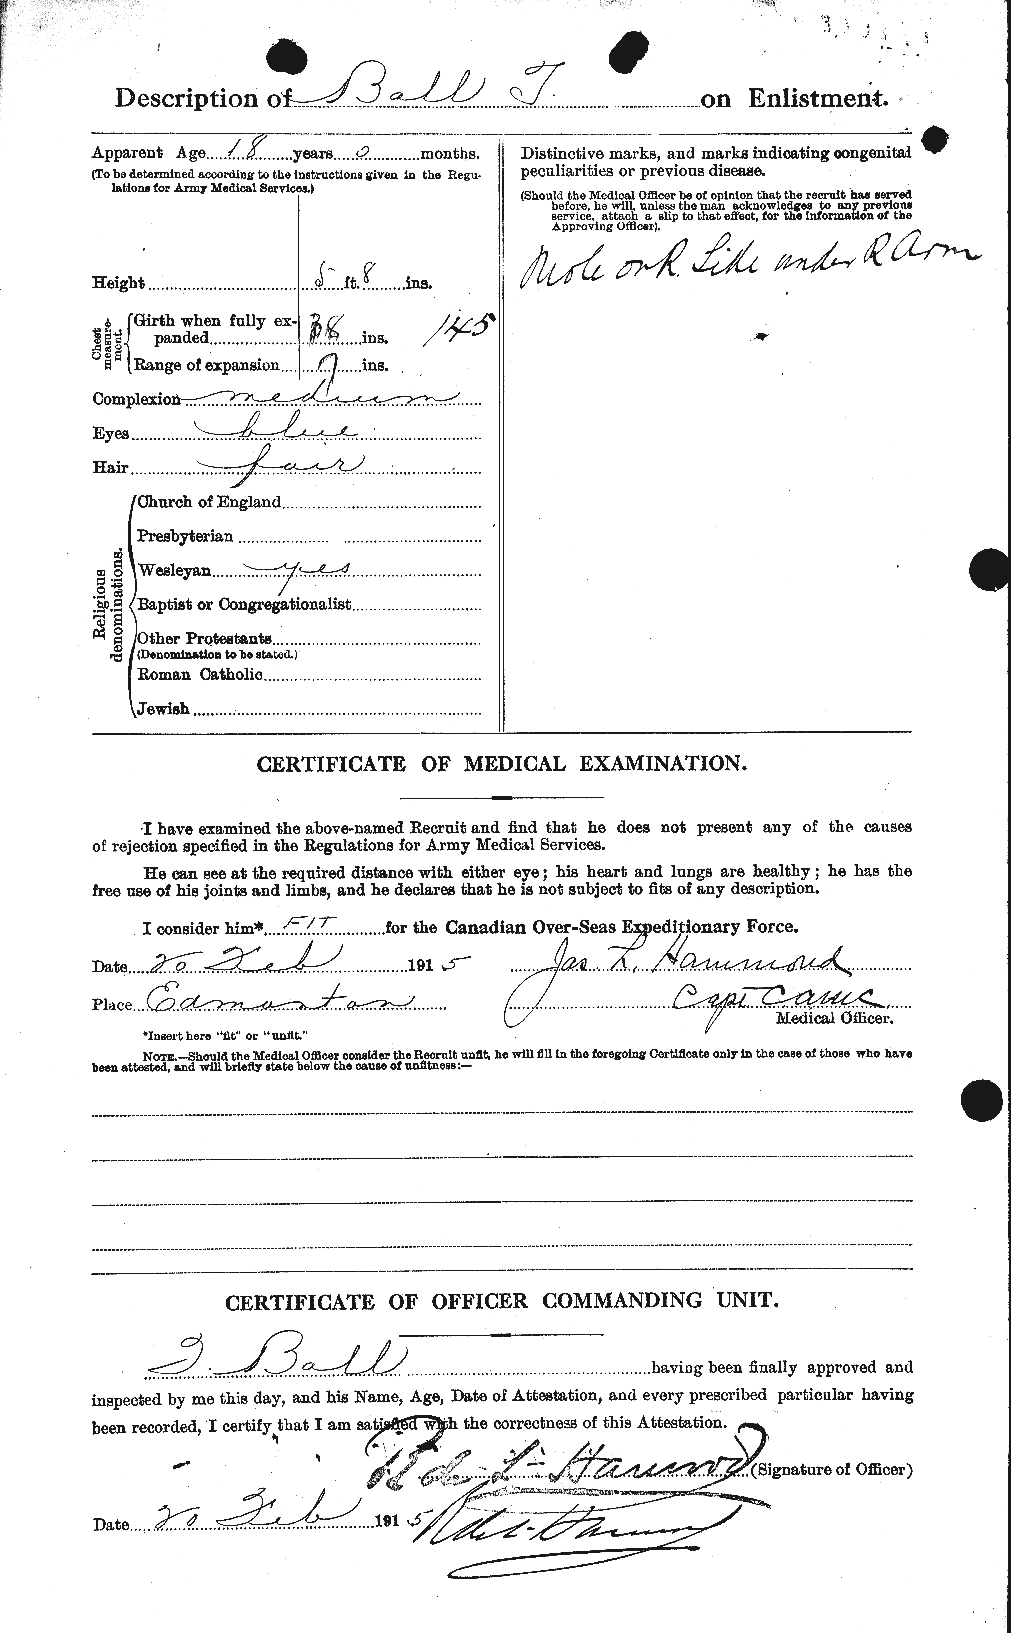 Dossiers du Personnel de la Première Guerre mondiale - CEC 225611b